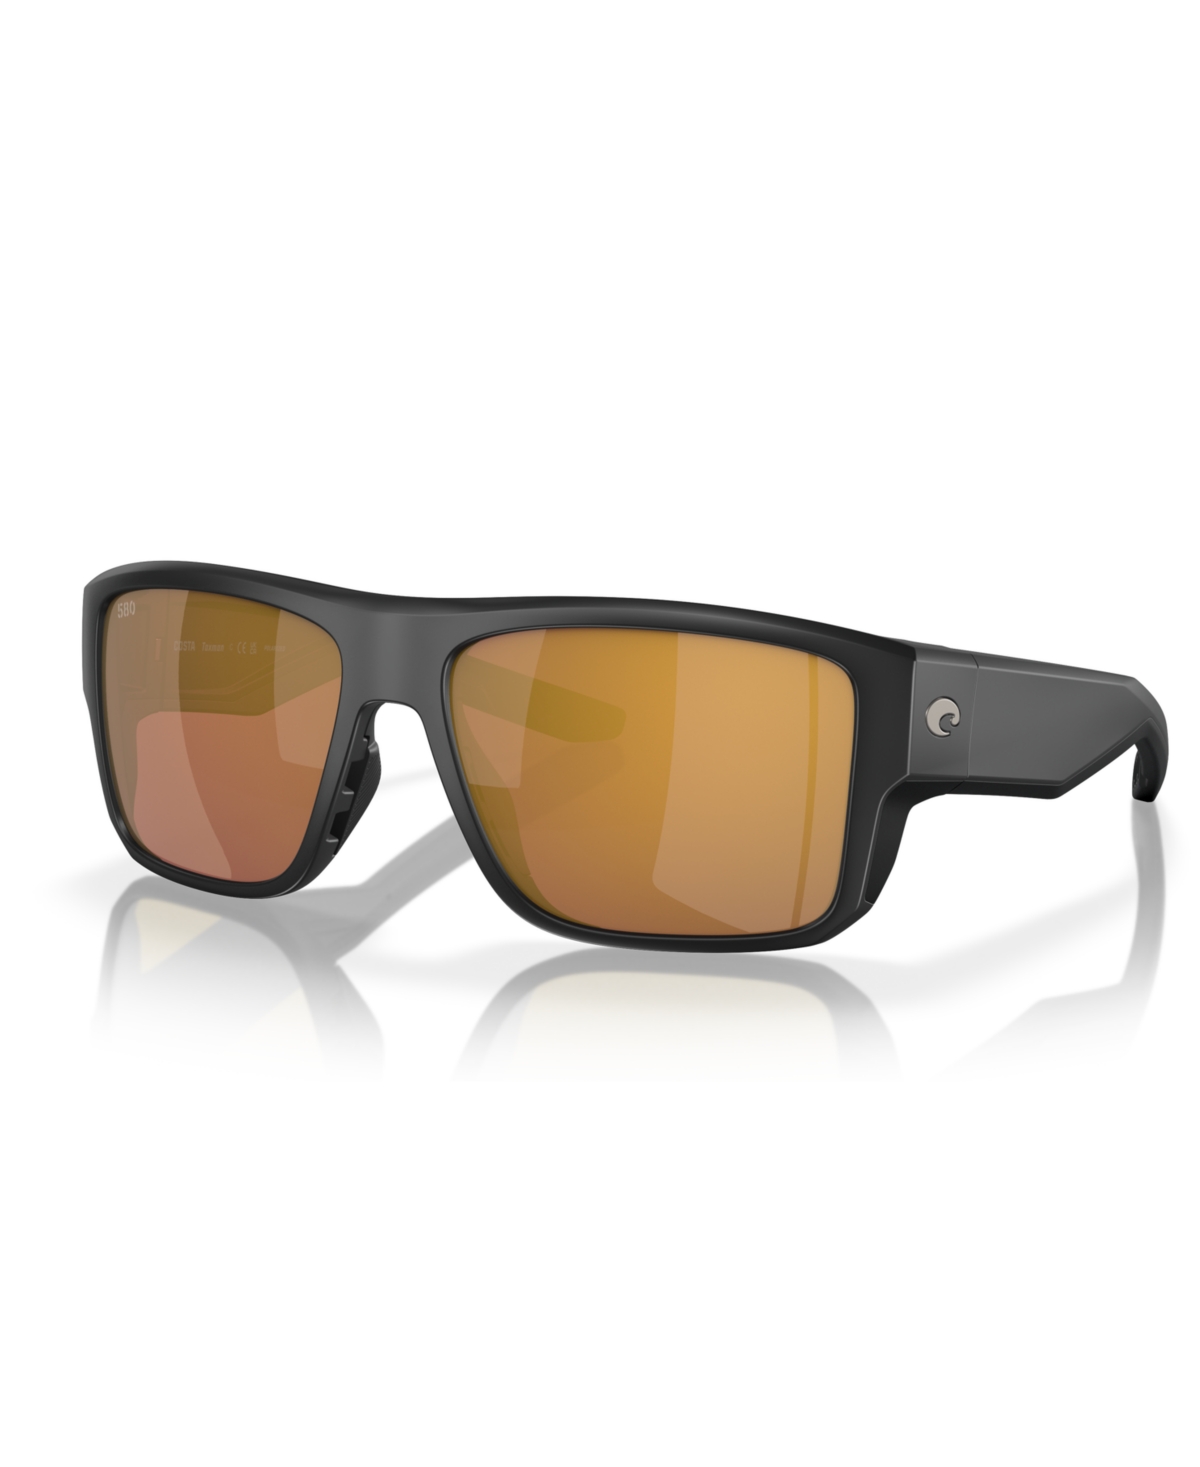 Men's Polarized Sunglasses, Taxman 6S9116 - Matte Black, Gold